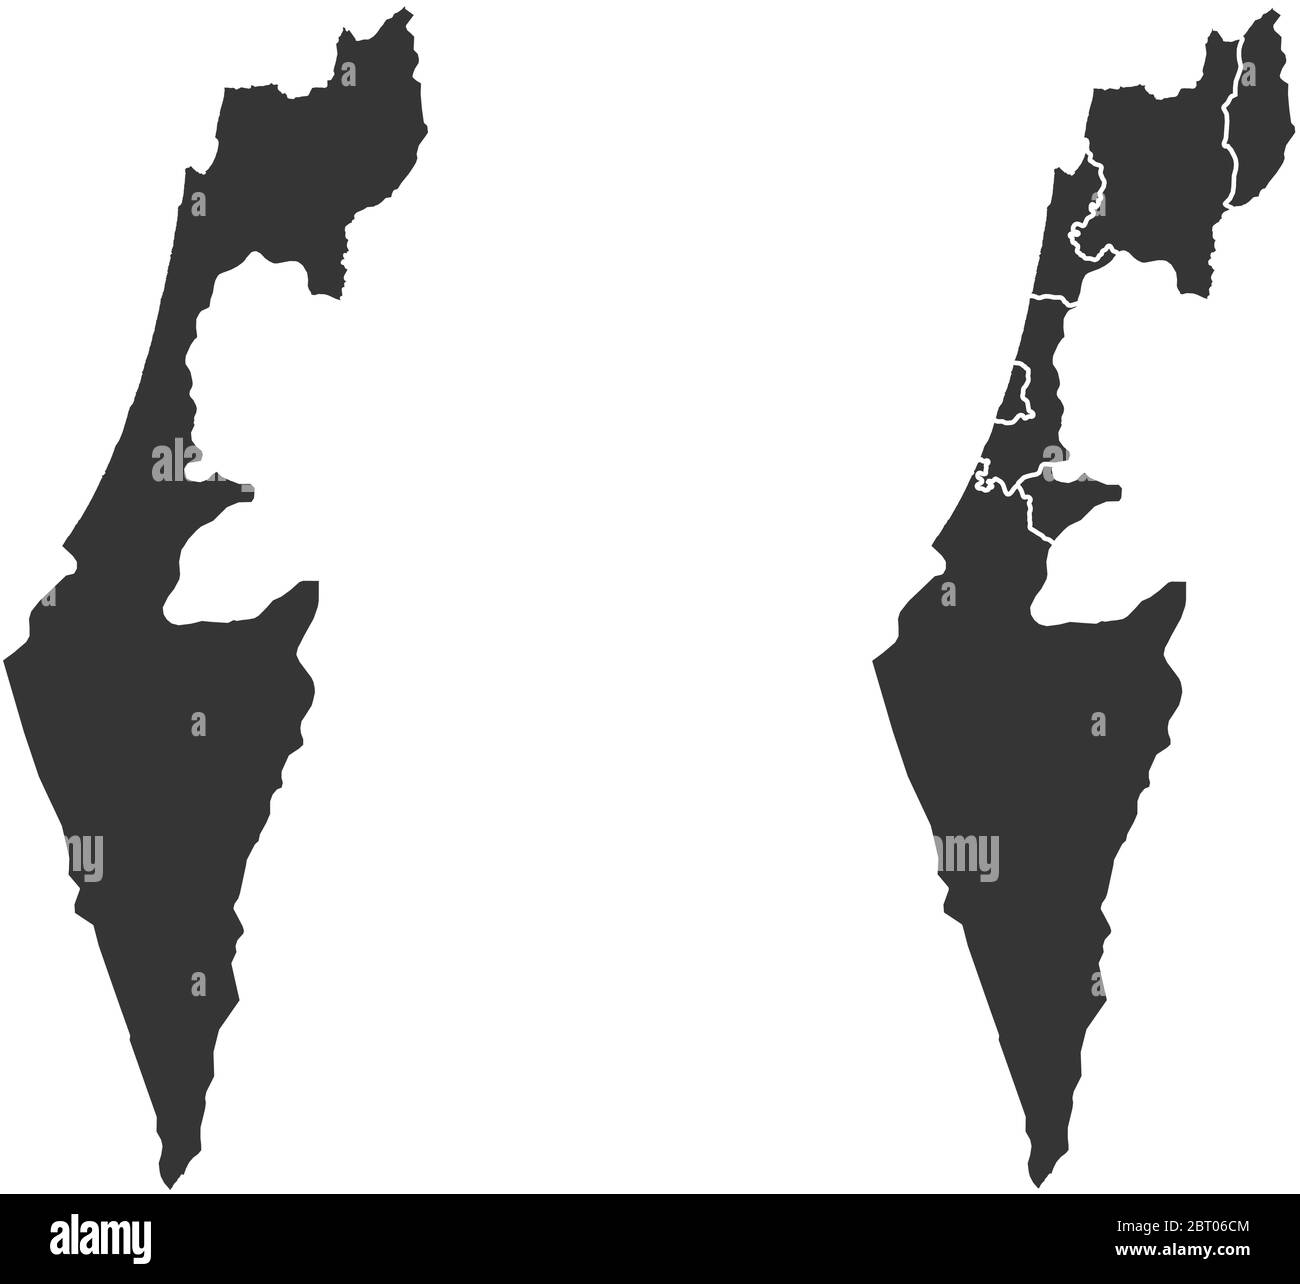 Israele mappe vettoriali con regioni amministrative, comuni, dipartimenti, frontiere Illustrazione Vettoriale